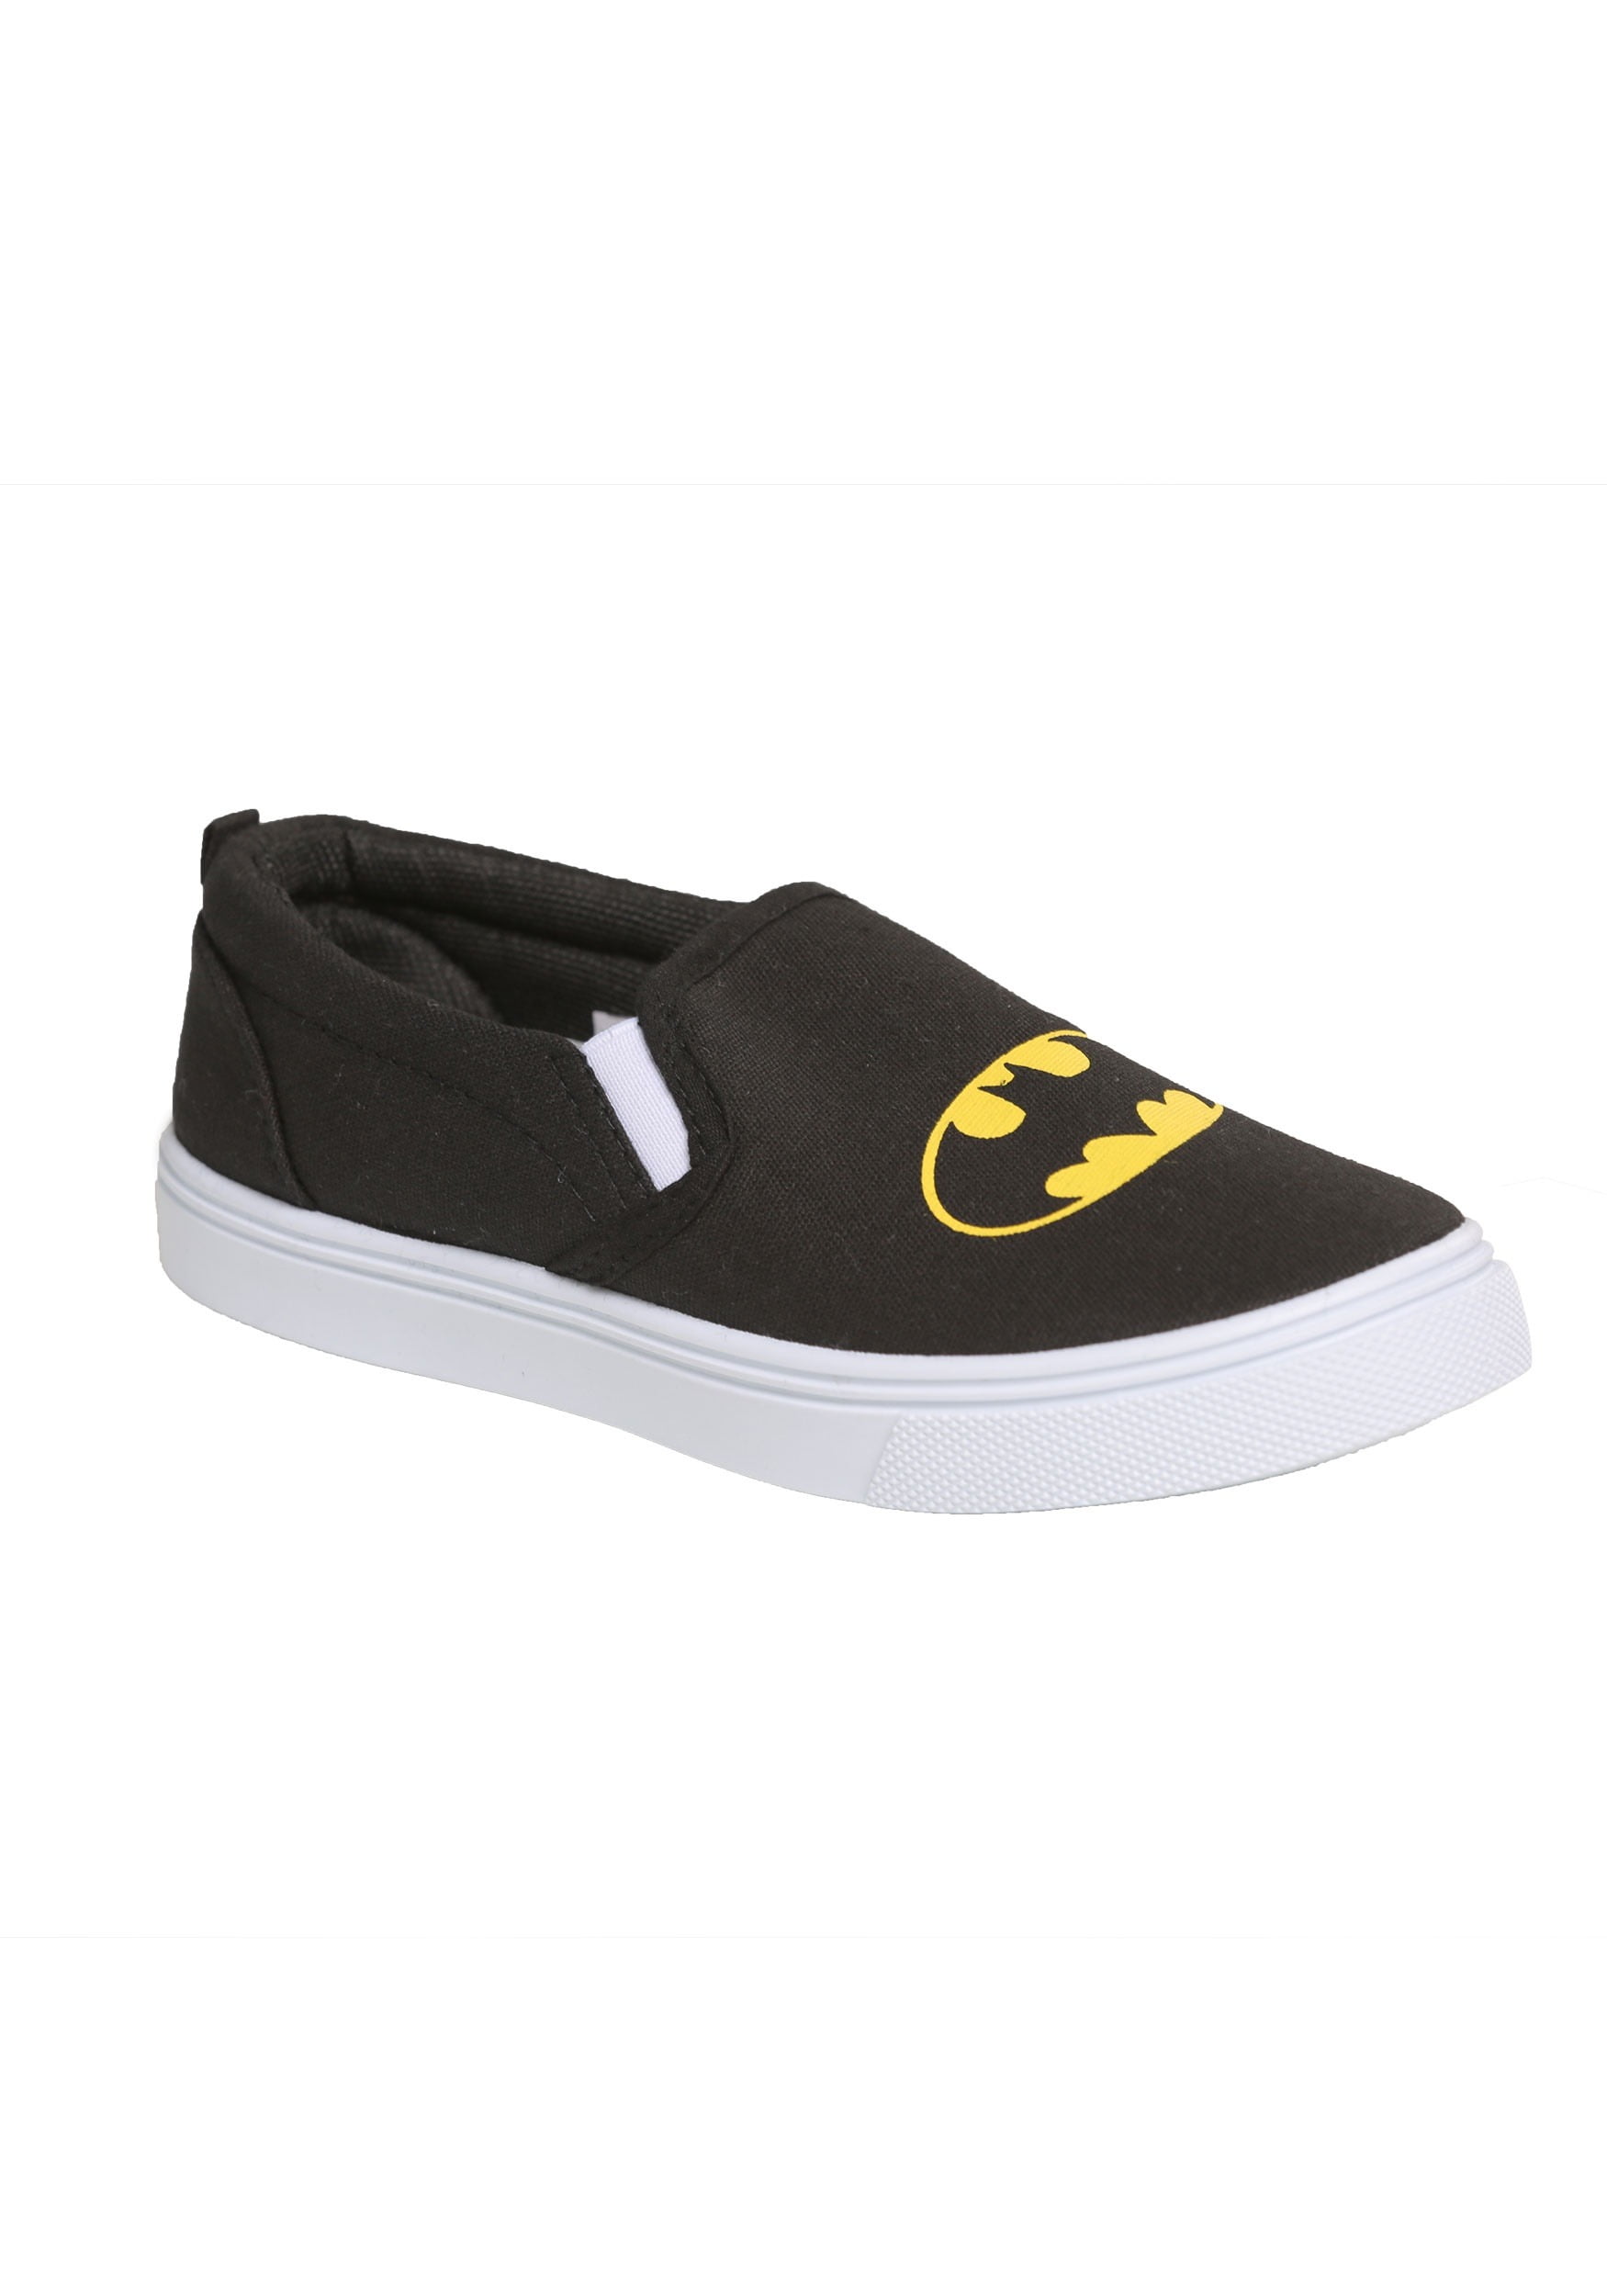 batman shoes at walmart